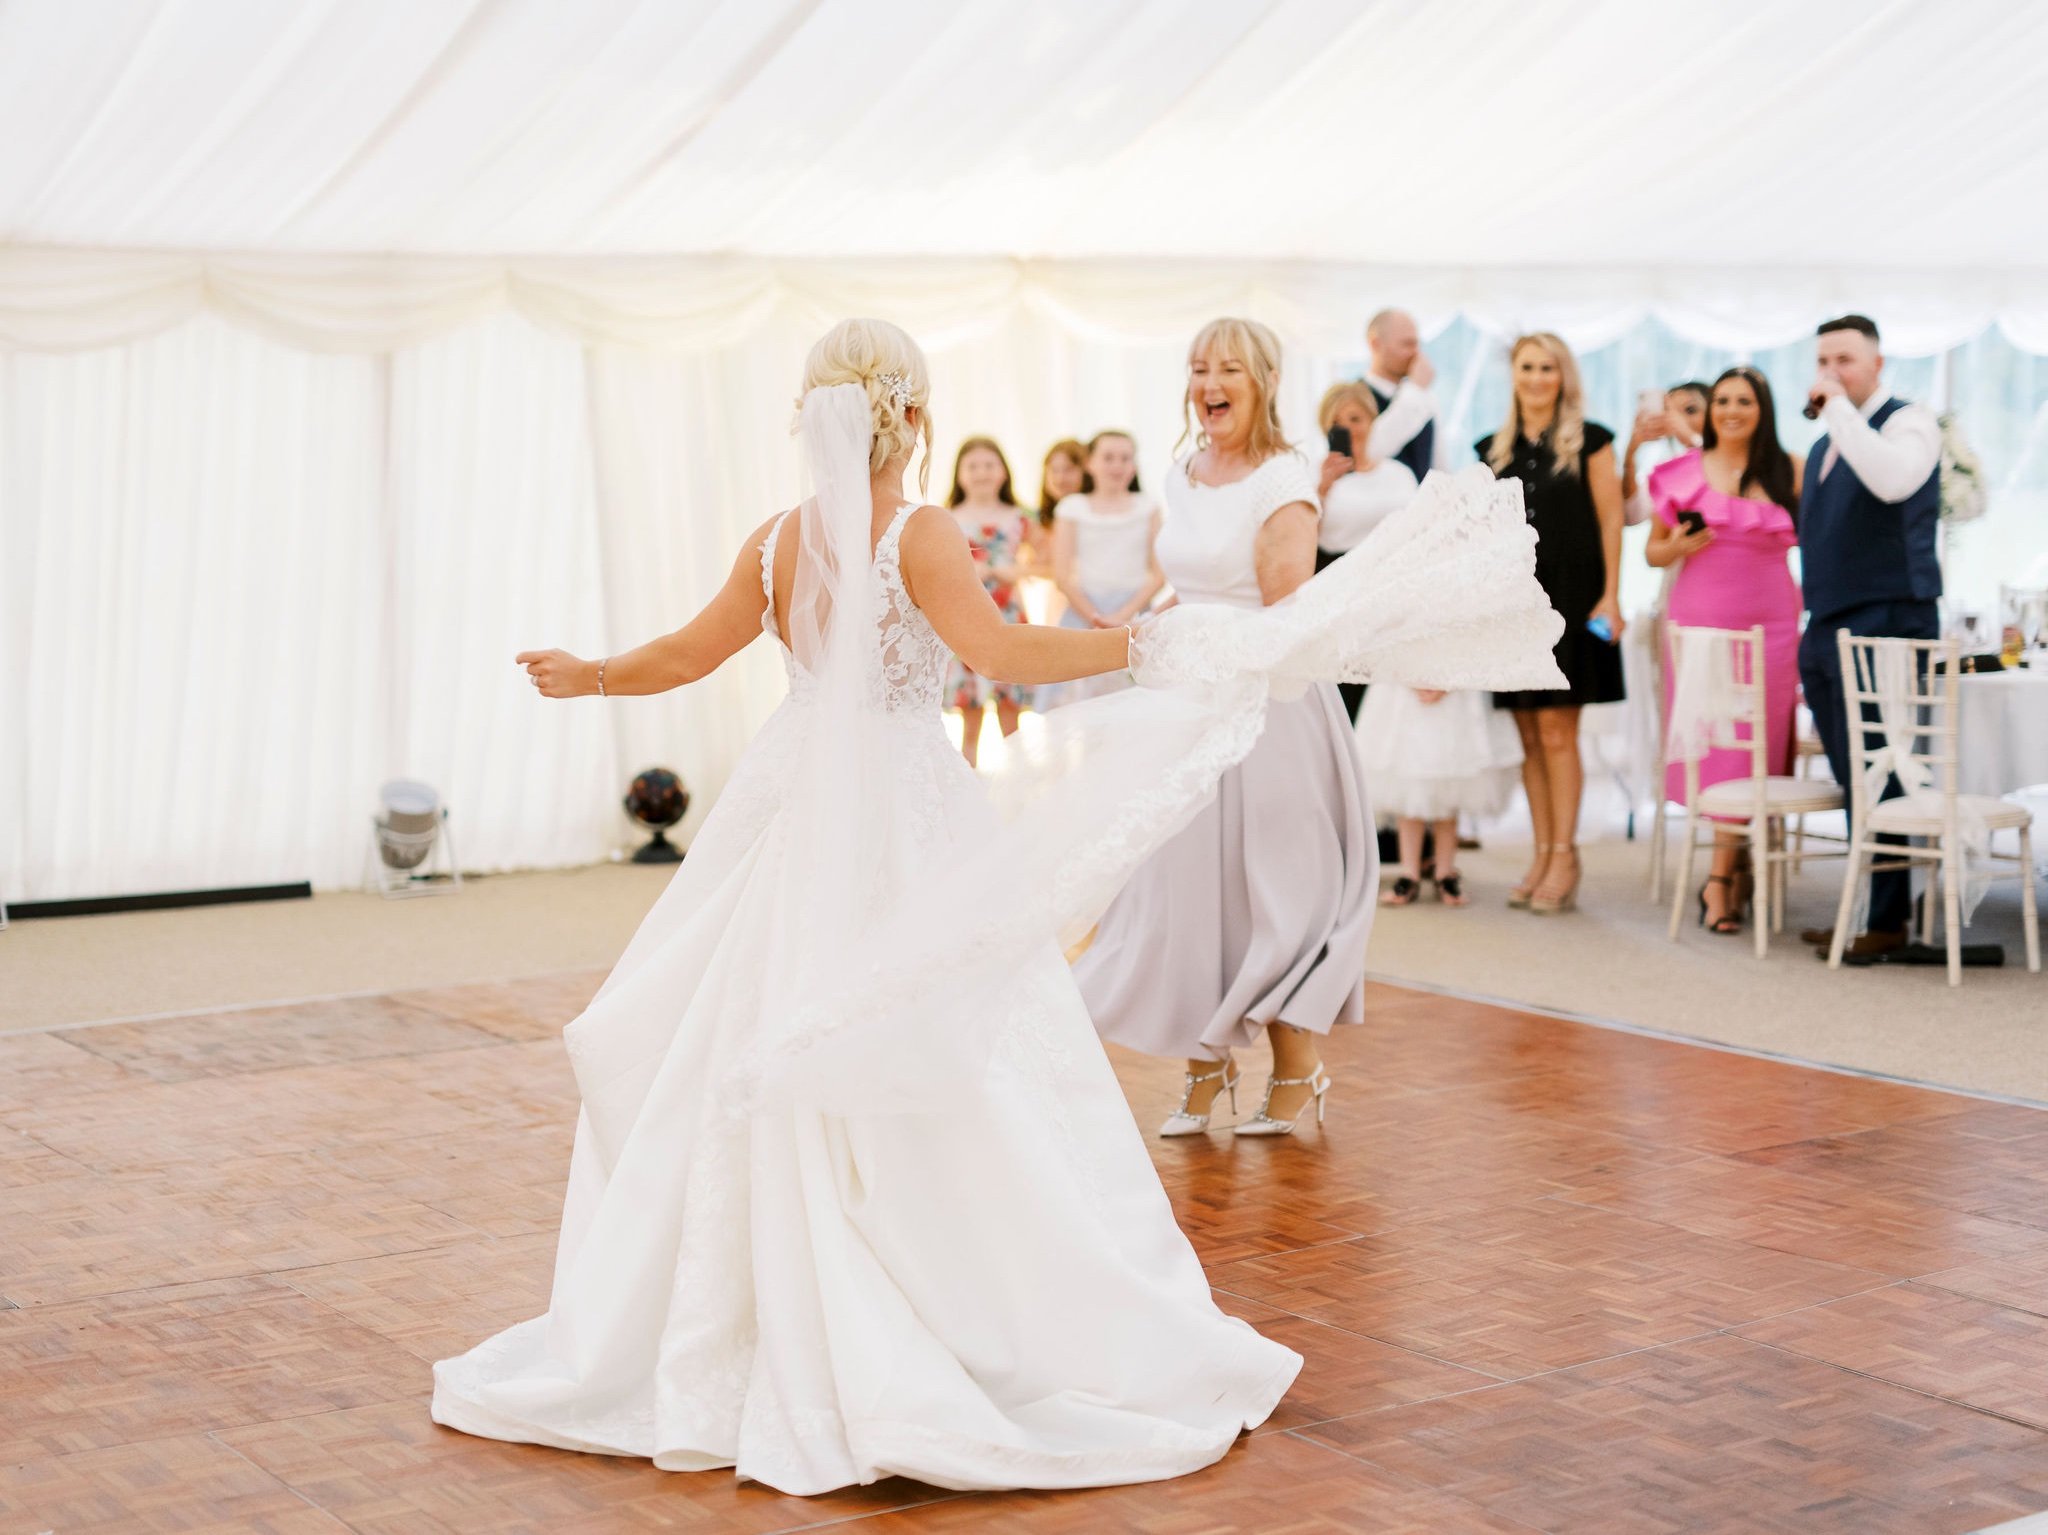 65_springkell-house-wedding-photographer-dumfries-scotland-bride-mum-dancing.jpg